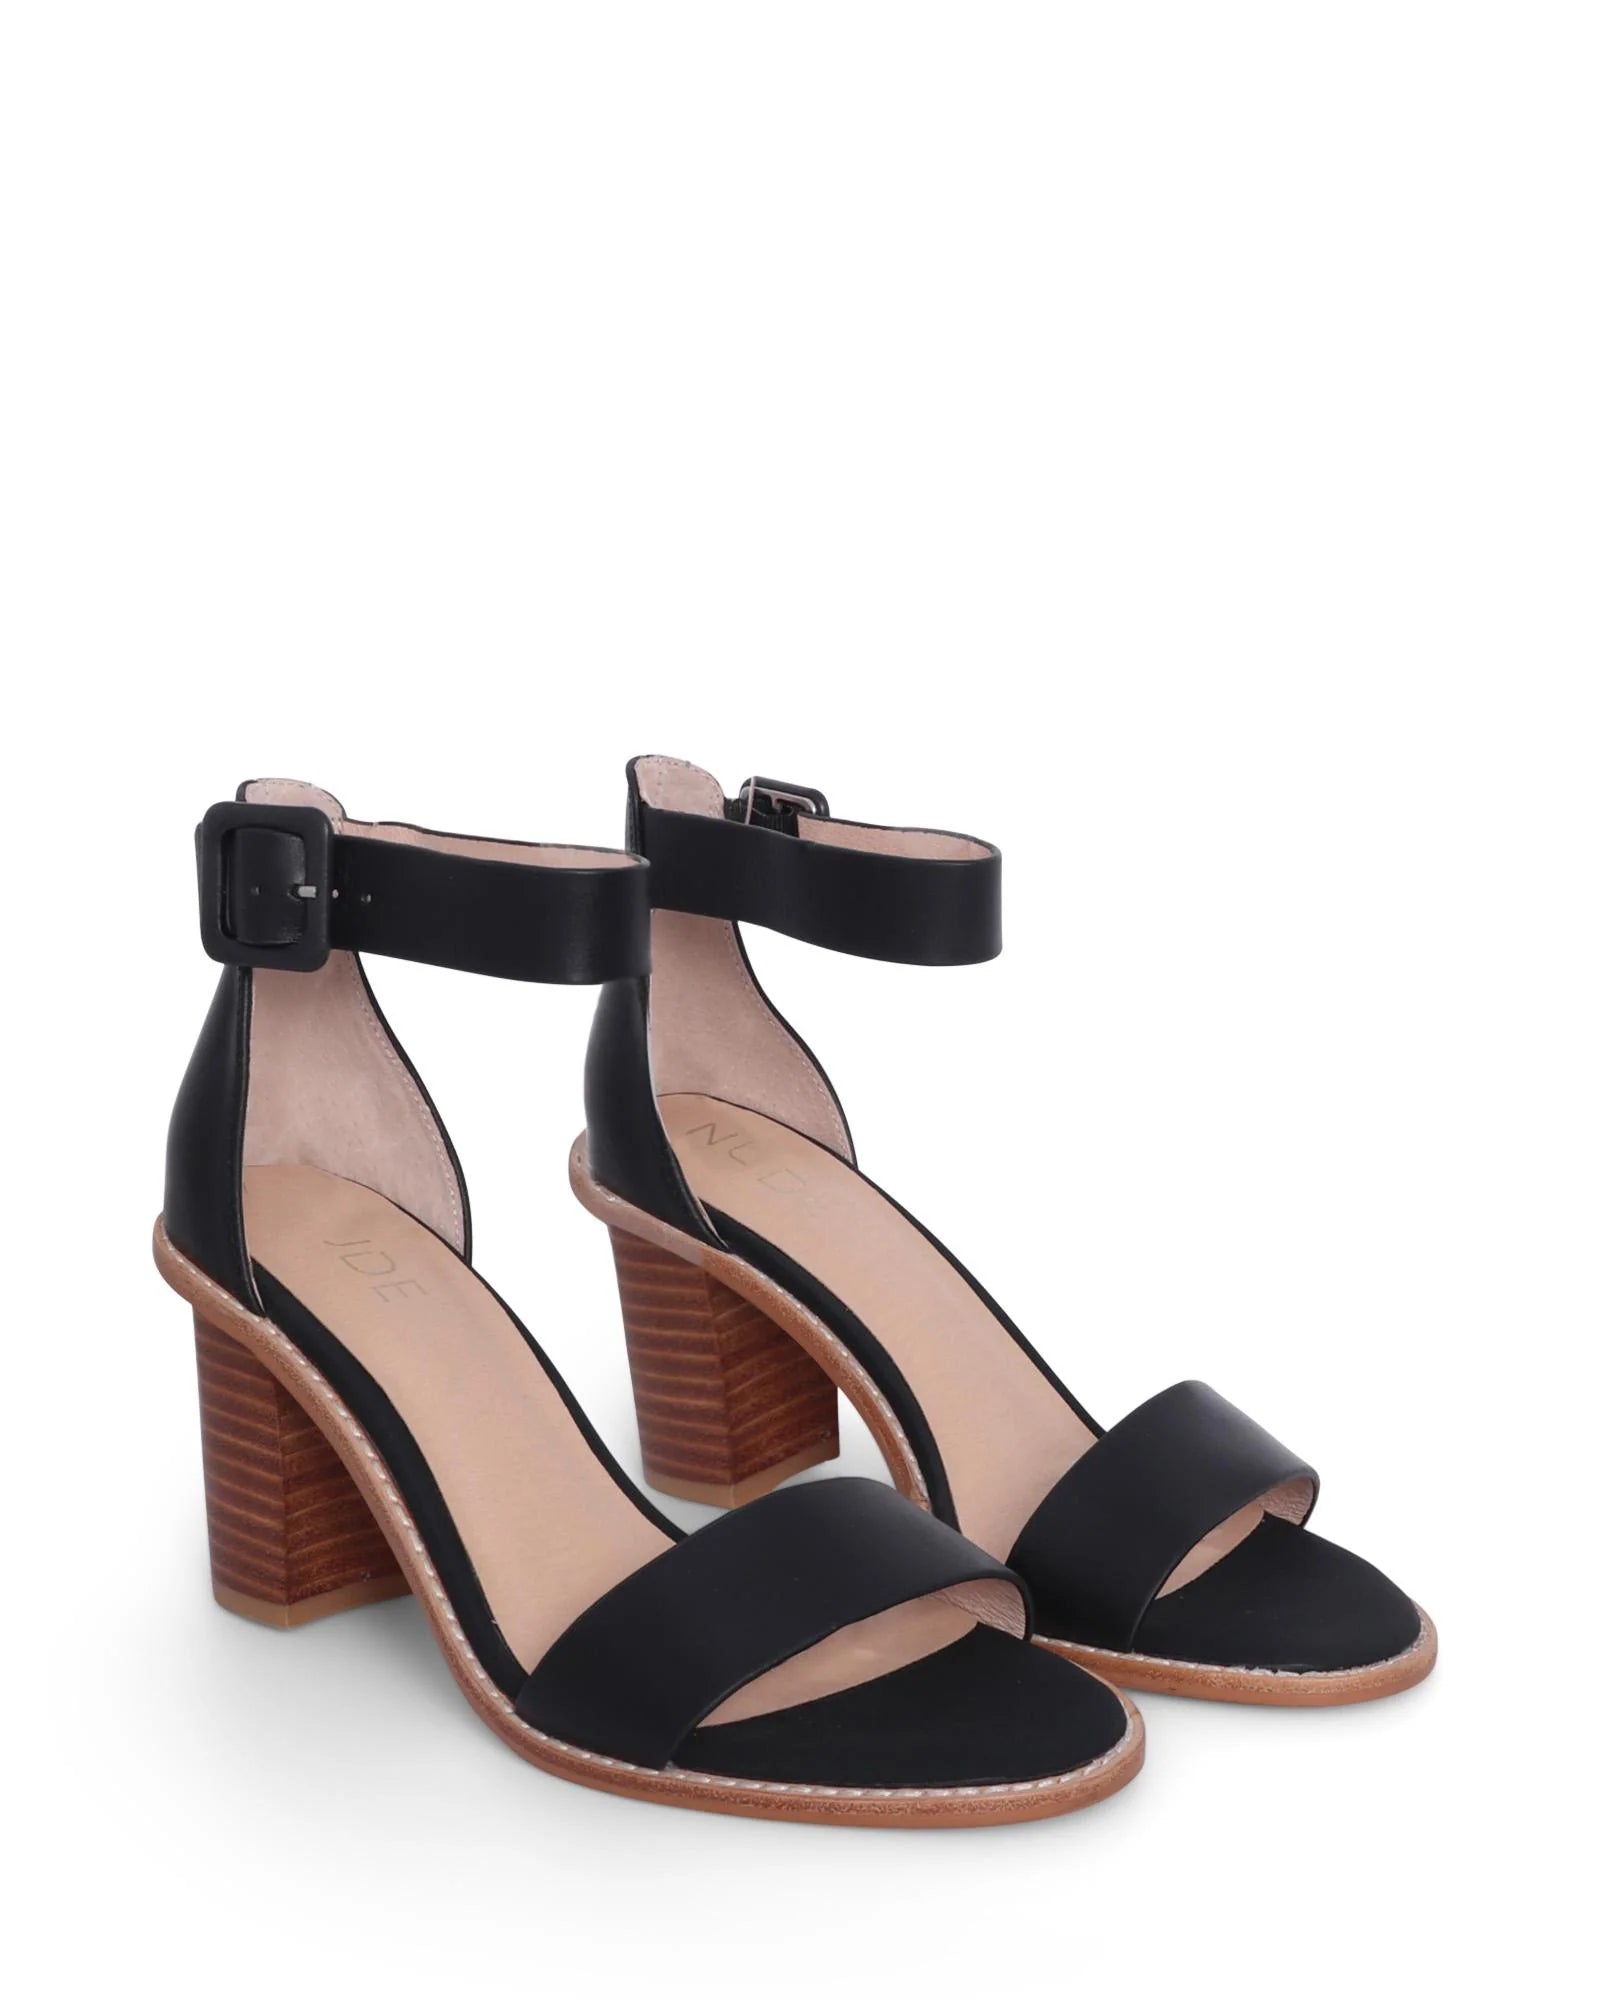 GRADY BLACK - NUDE FOOTWEAR - 36, 37, 38, 39, 40, 41, BLACK, block heel, womens footwear - Stomp Shoes Darwin